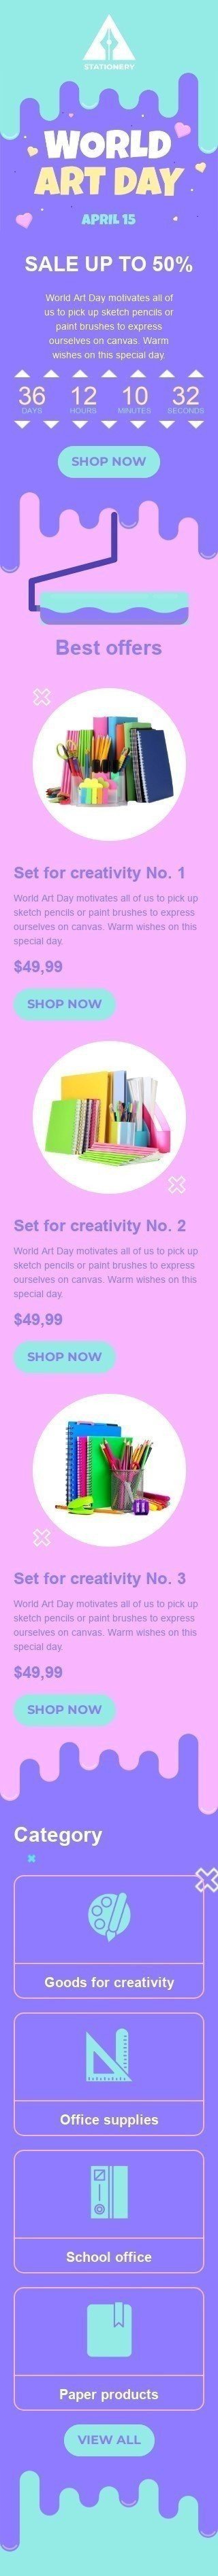 Plantilla de correo electrónico «Conjunto para la creatividad» de Día Mundial del Arte para la industria de Libros y regalos y papelería Vista de móvil